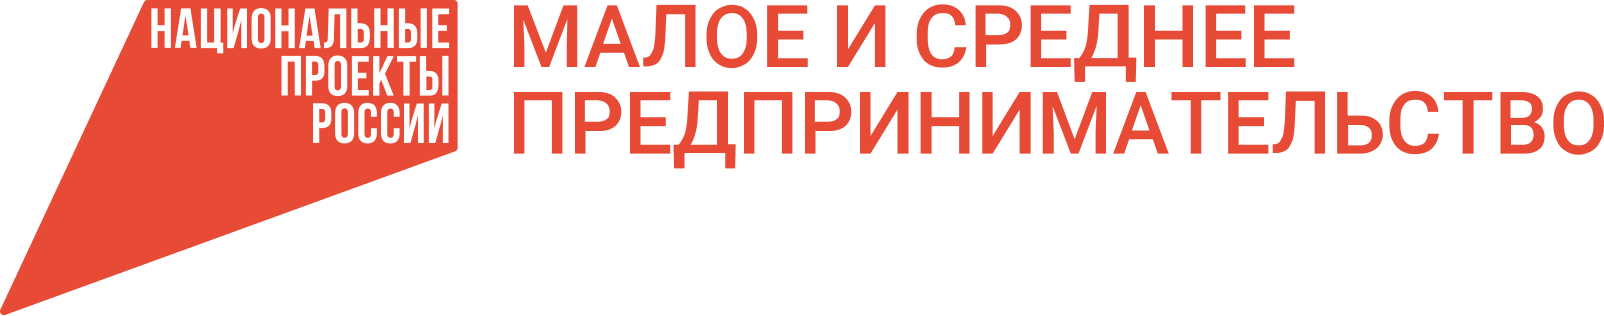 Logo_natsproekta.png